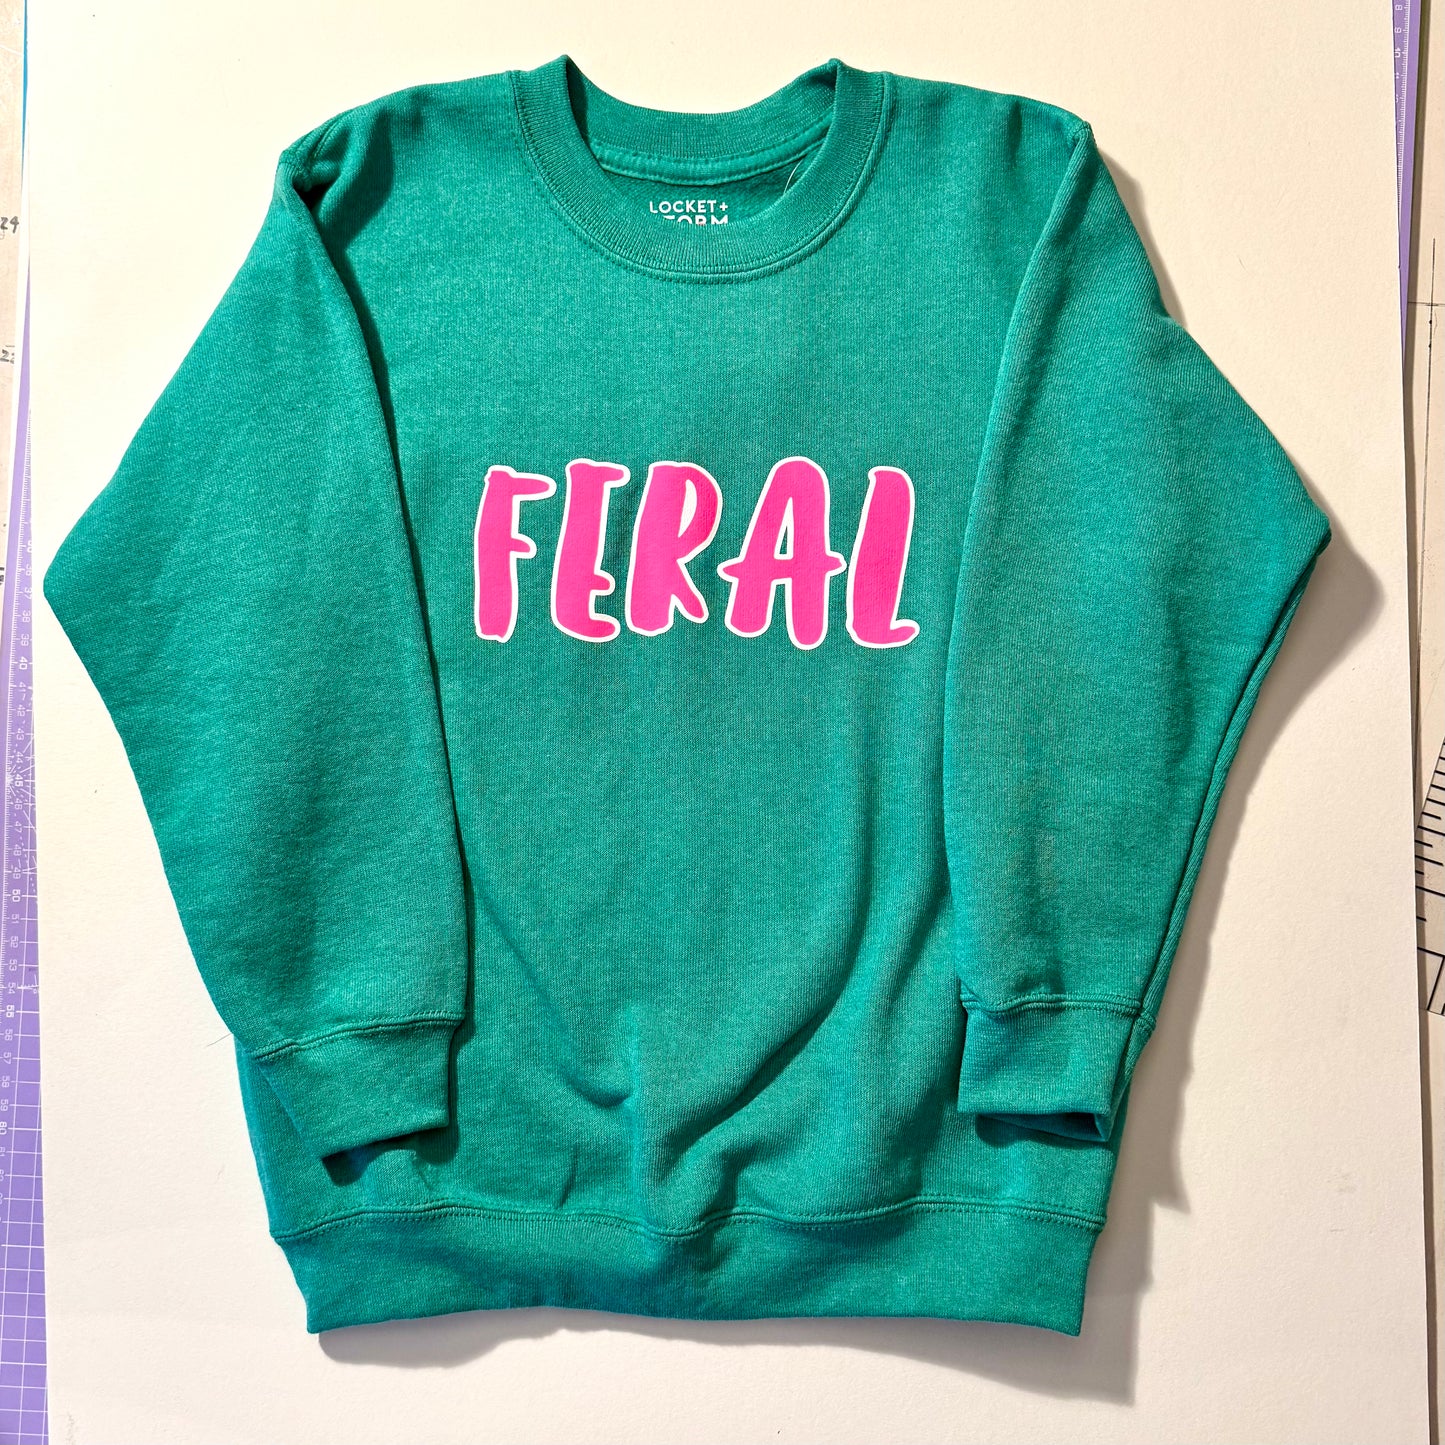 SALE Kids Feral Sweatshirt - 7-8 years